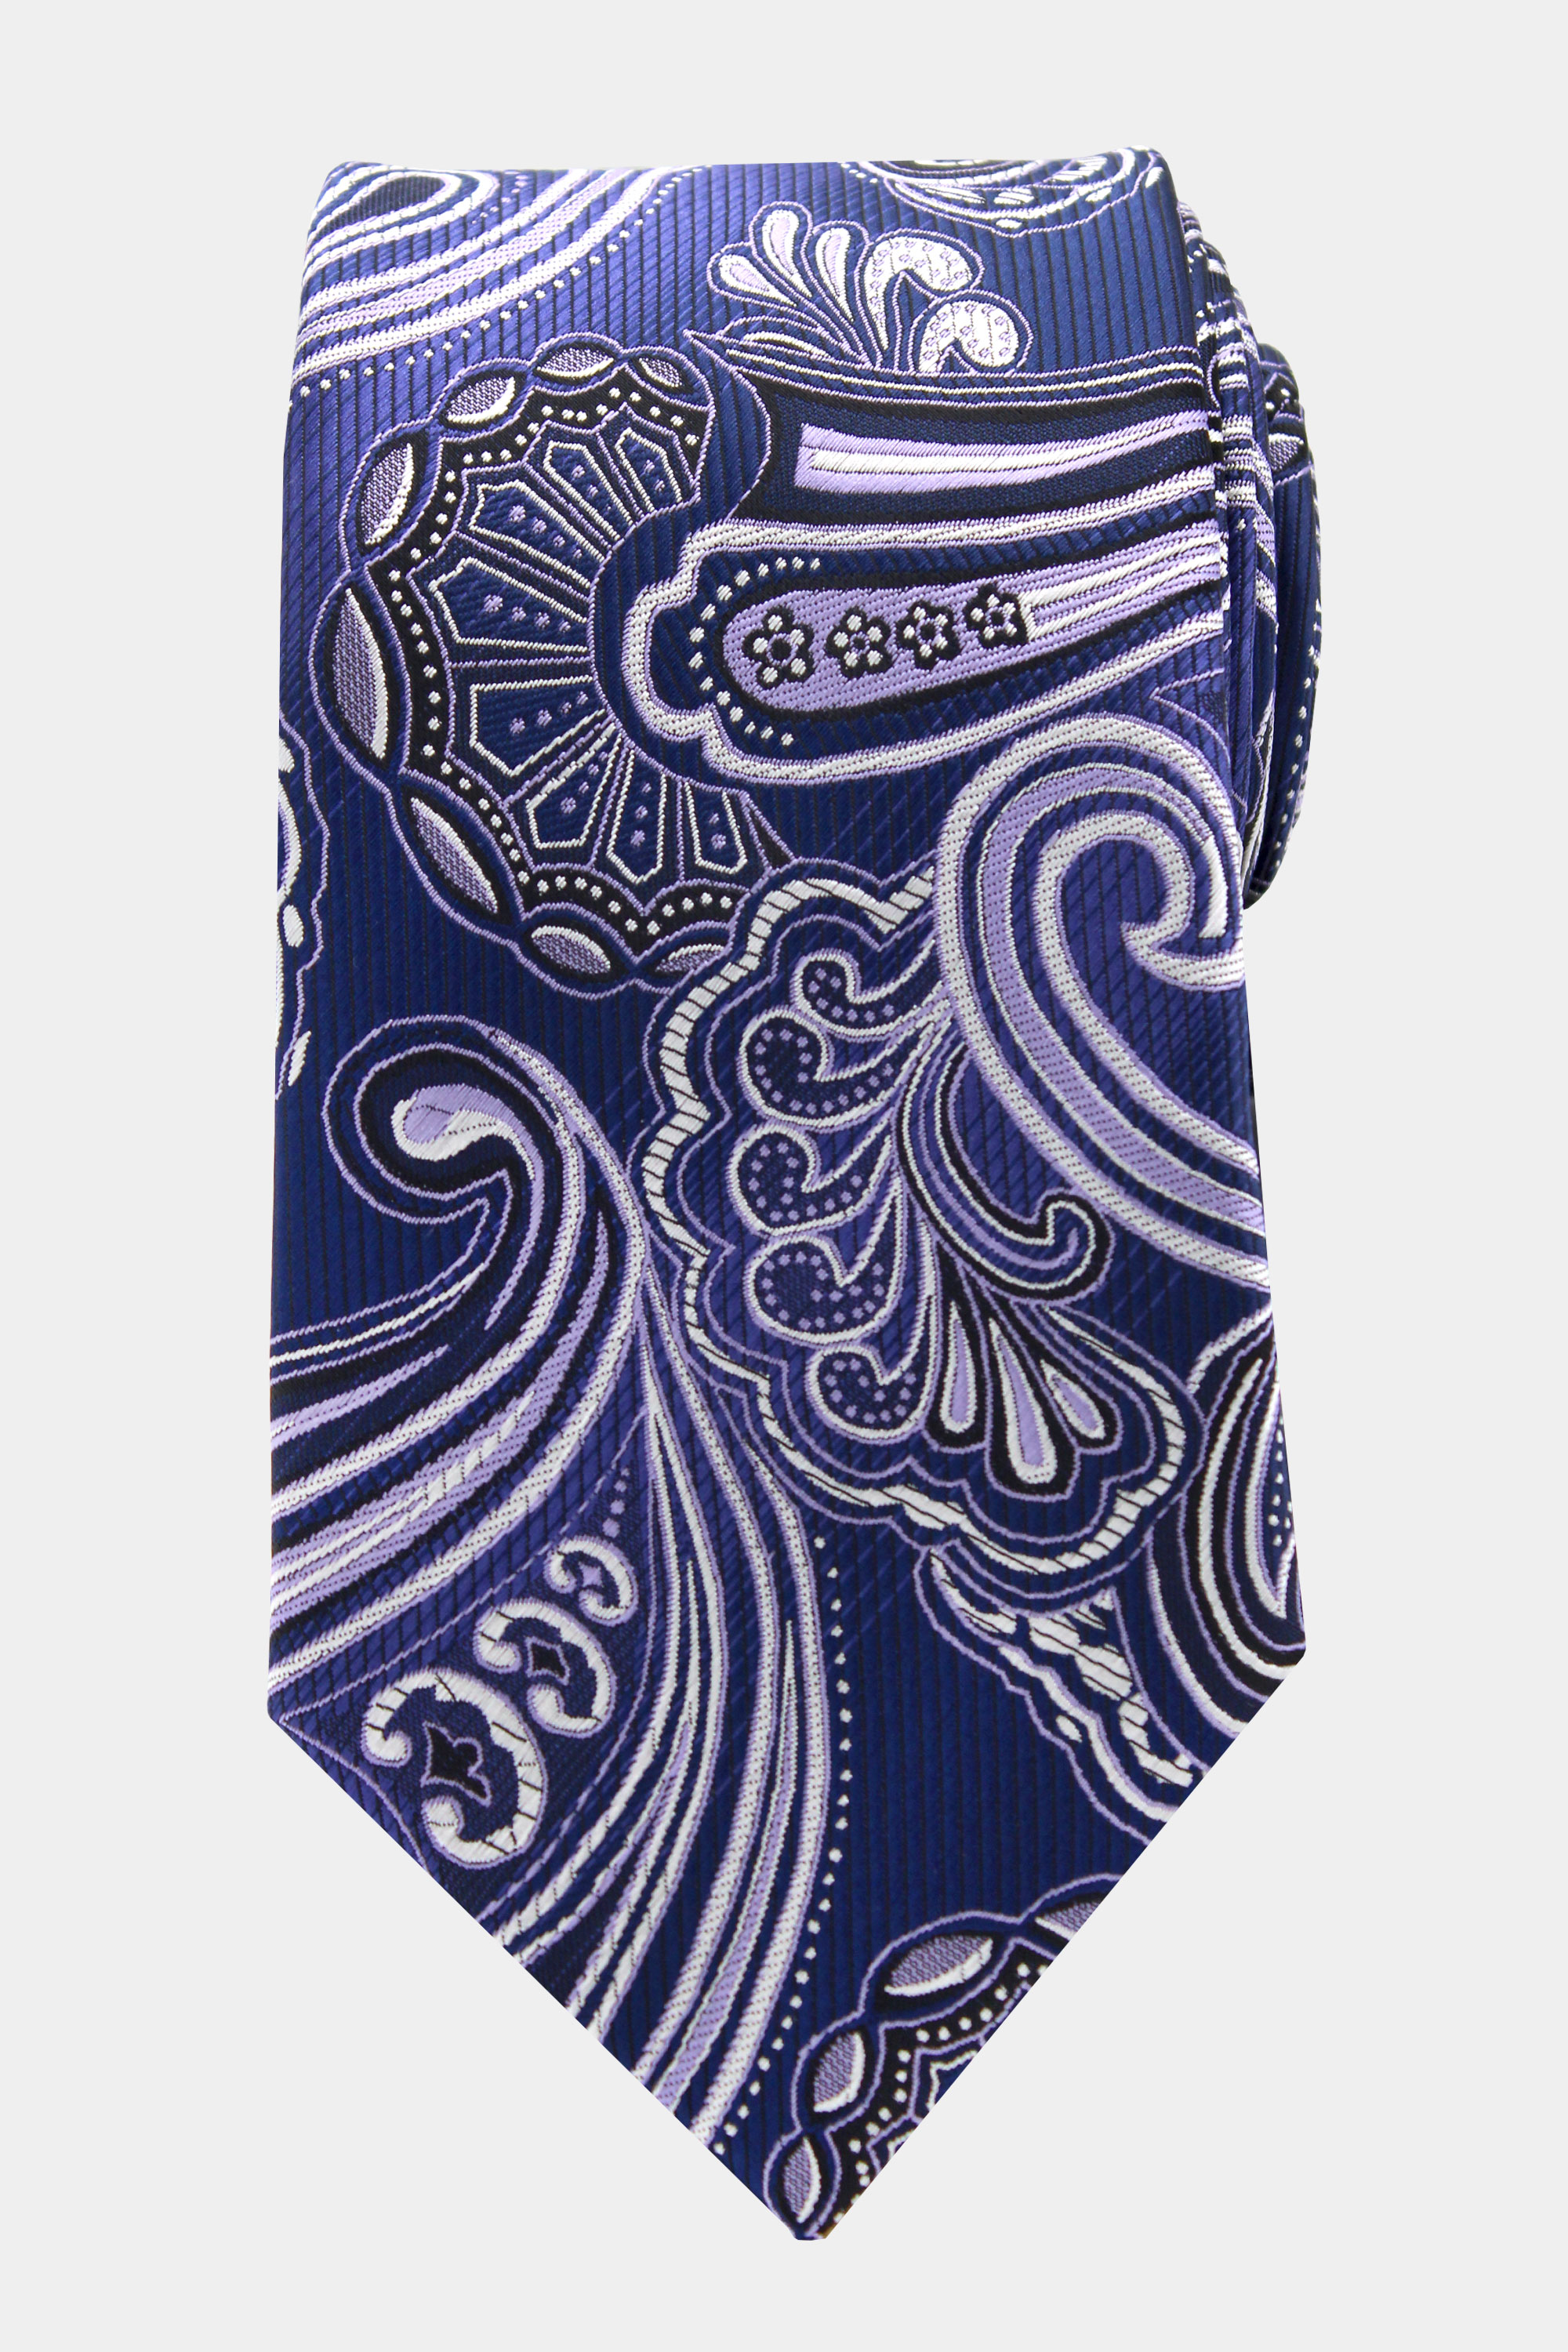 Paisley-Cobalt-Blue-Tie-Groom-Wedding-Necktie-from-Gentlemansguru.com